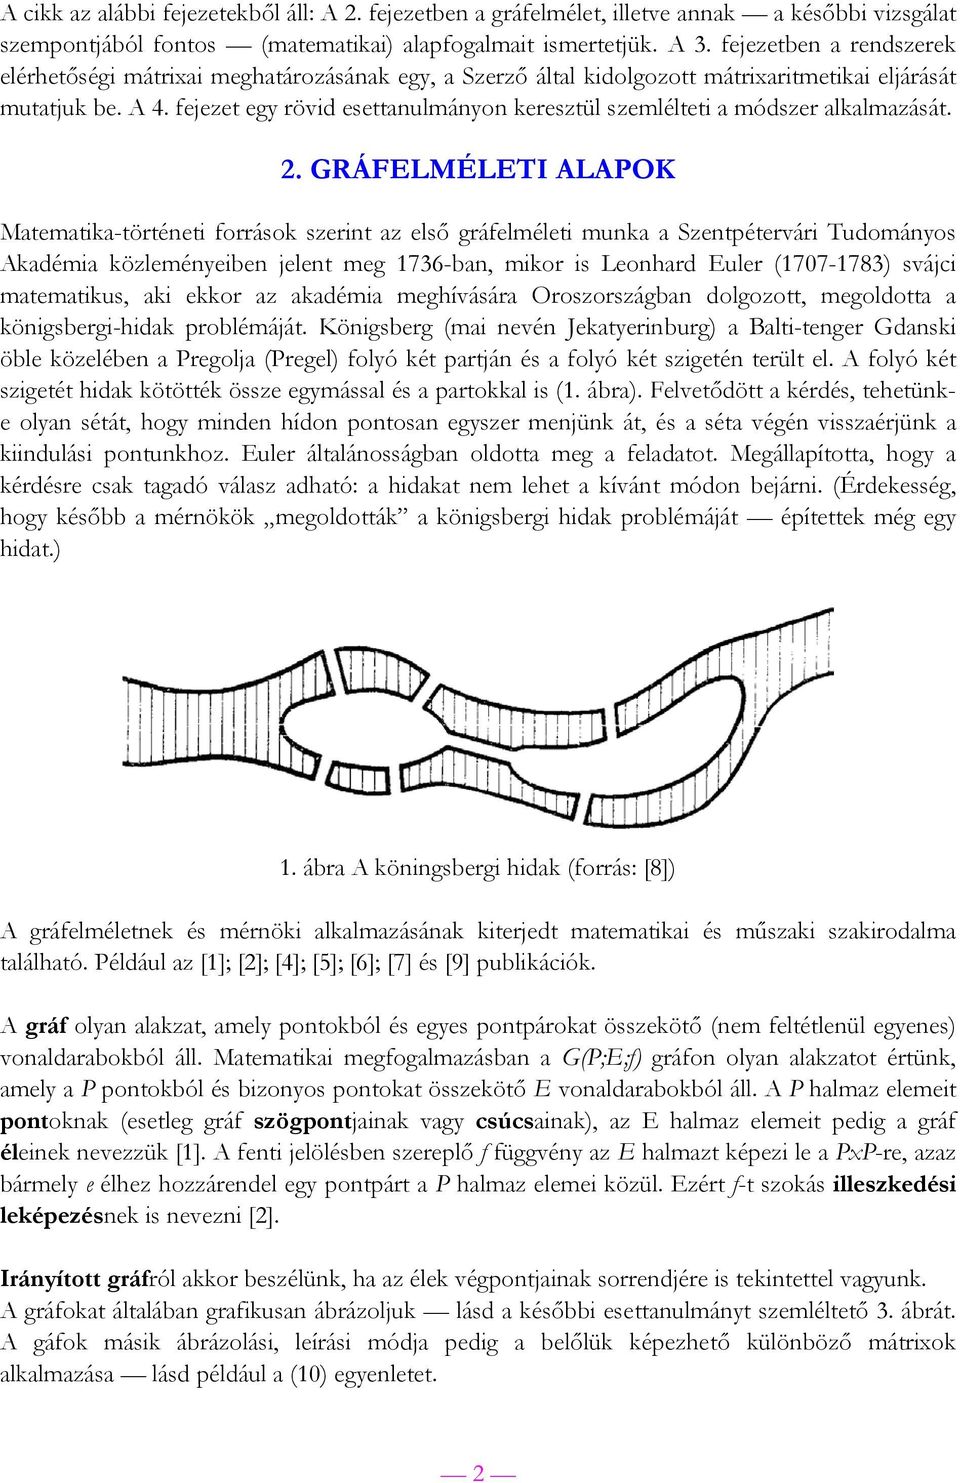 GRÁFELMÉLETI ALAPOK Mtemti-történeti forráso szerint z első gráfelméleti mun Szentpétervári Tudományos Adémi özleményeiben jelent meg 736-bn, mior is Leonhrd Euler (77-783) svájci mtemtius, i eor z